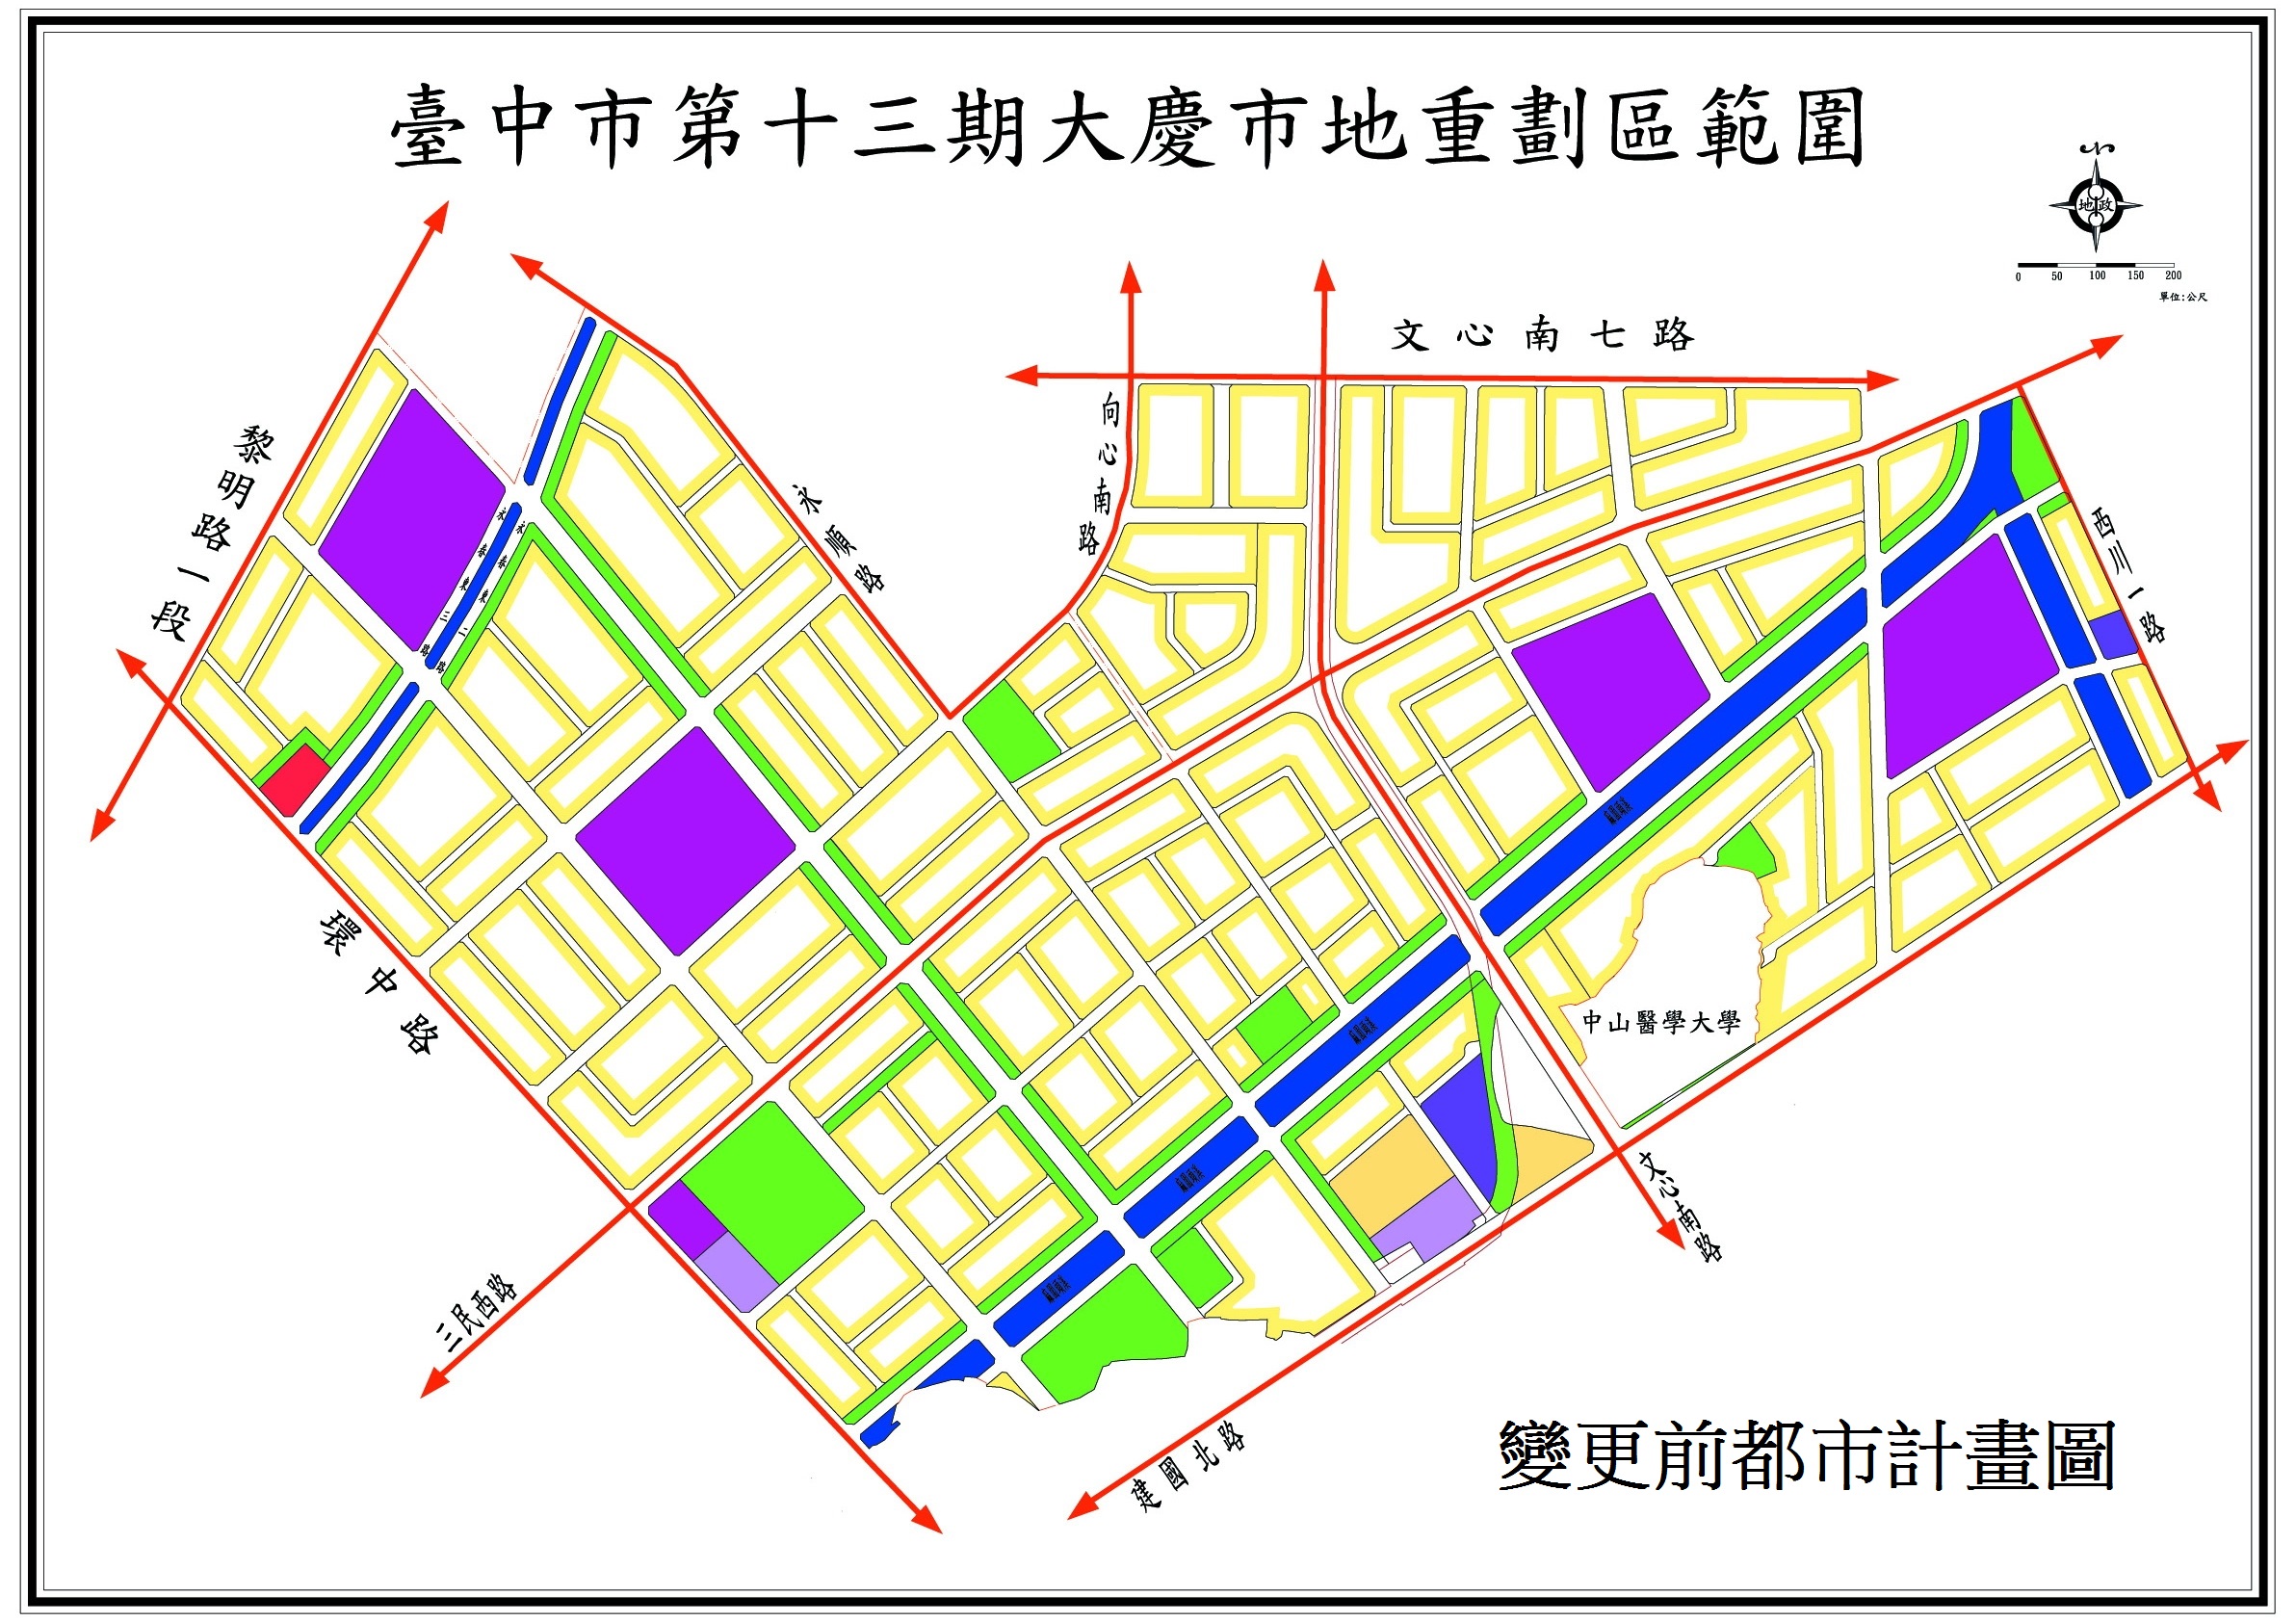 台中市第十三期大慶市地重劃區變更後細部計畫示意圖